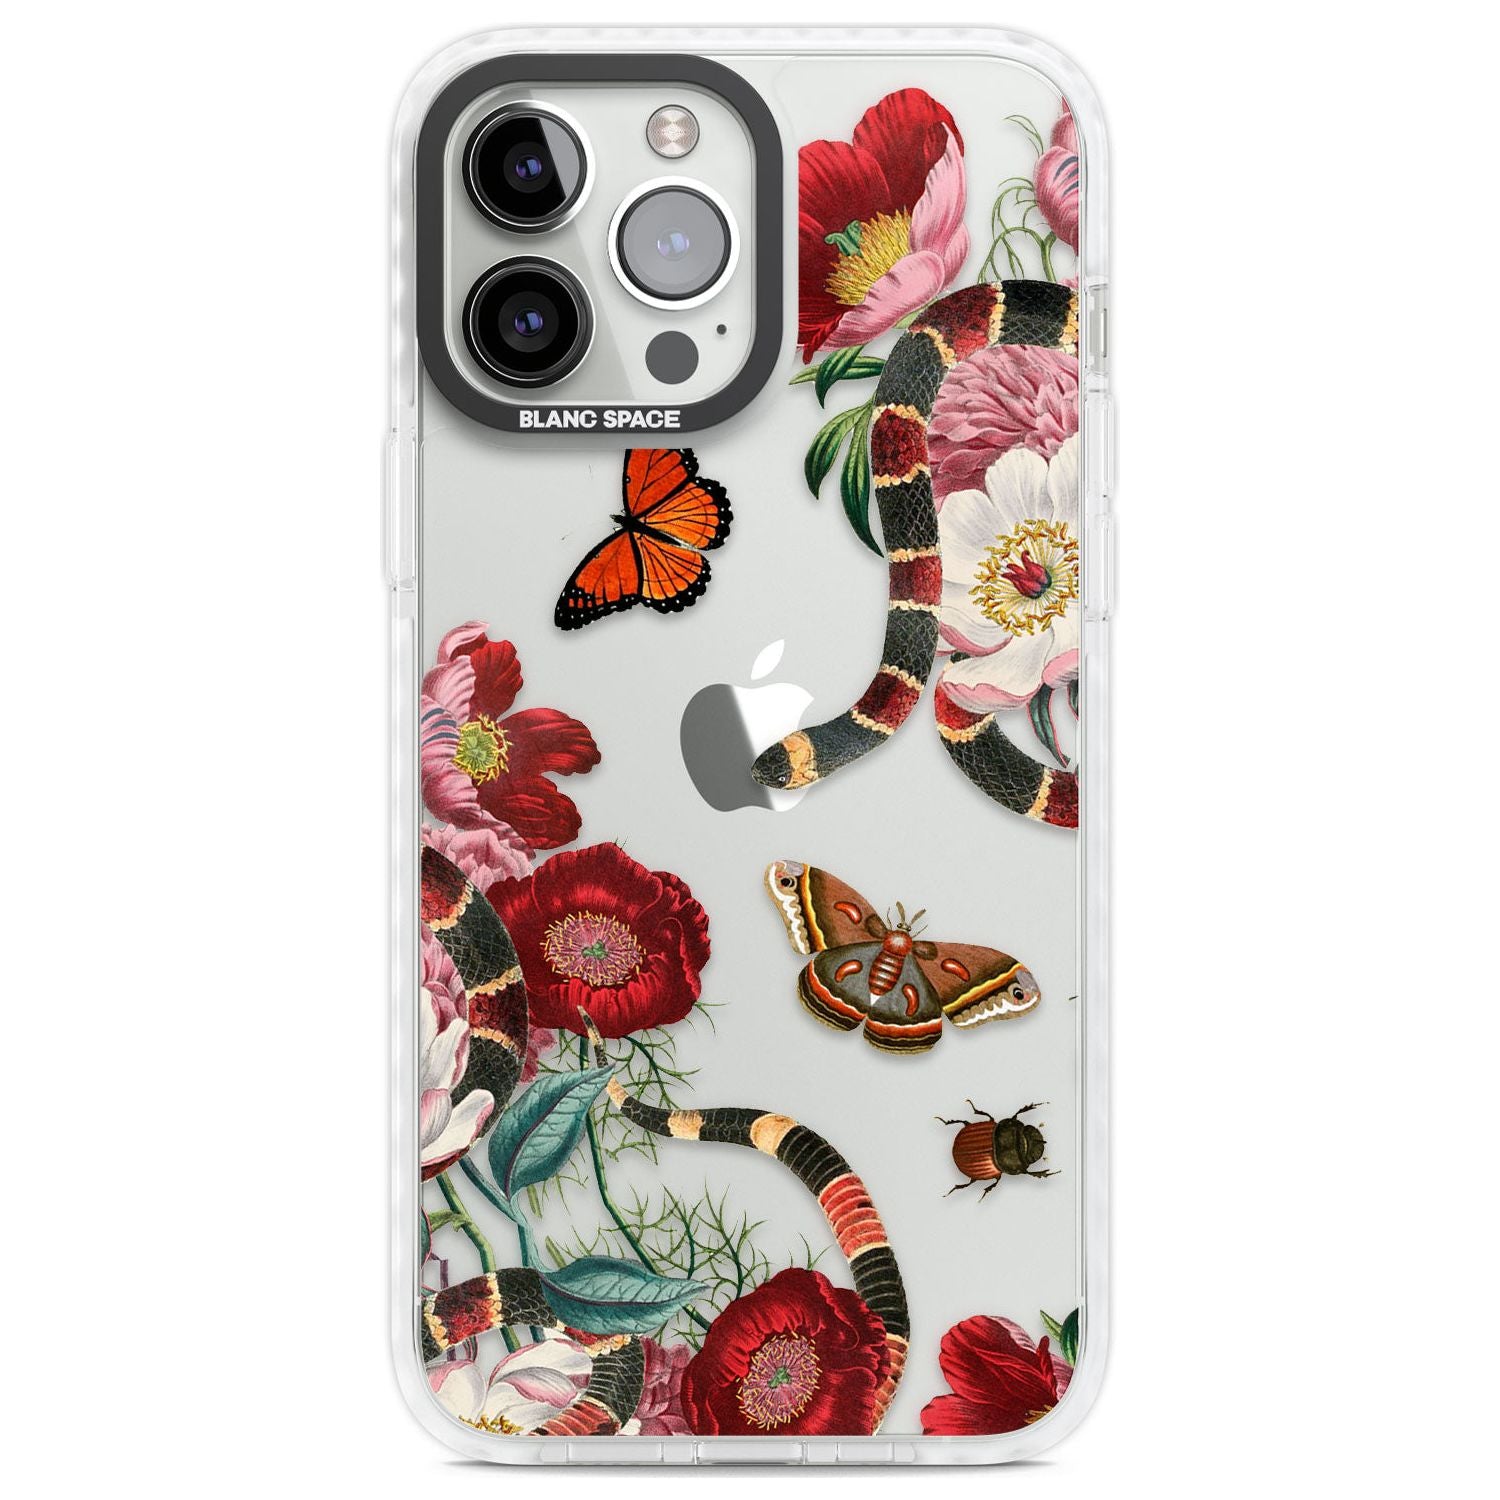 Botanical Snake Phone Case iPhone 13 Pro Max / Impact Case,iPhone 14 Pro Max / Impact Case Blanc Space